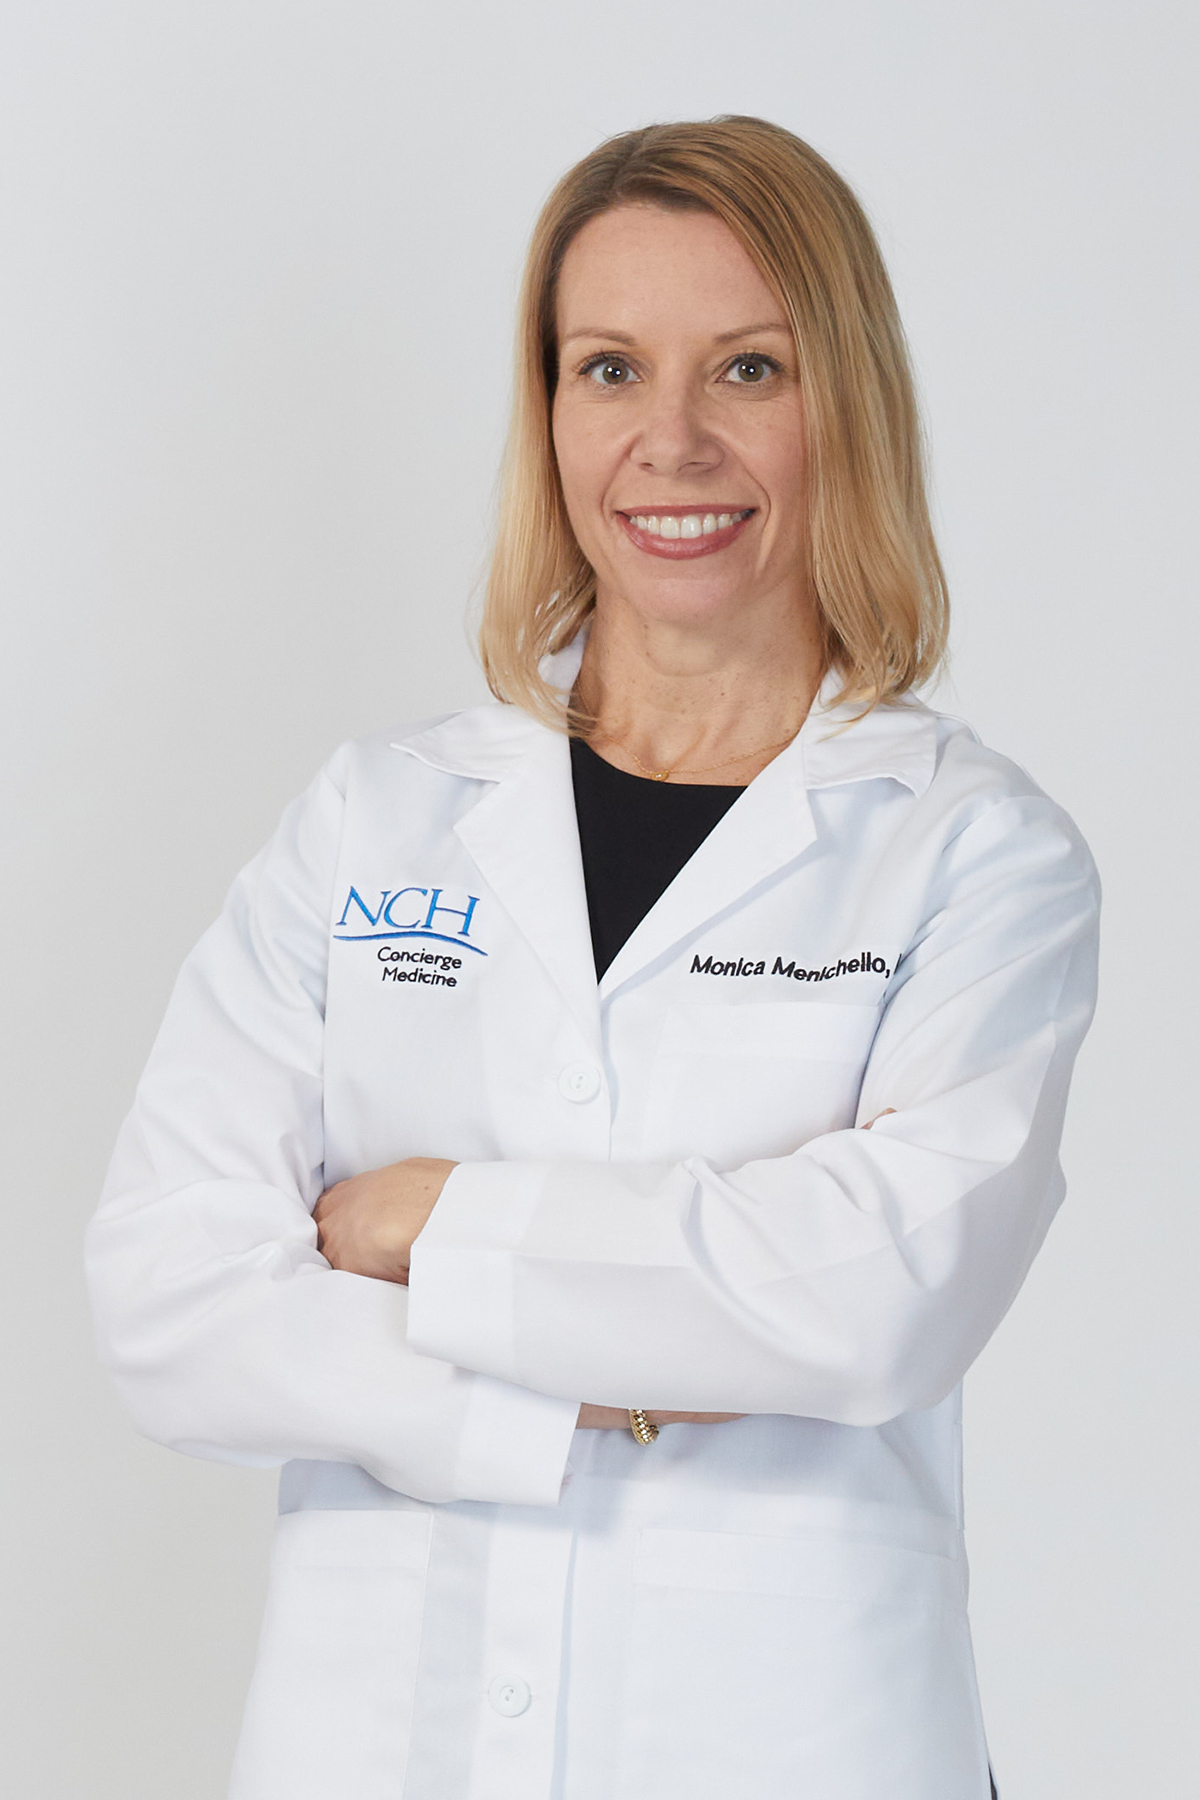 Dr. Monica Menichello